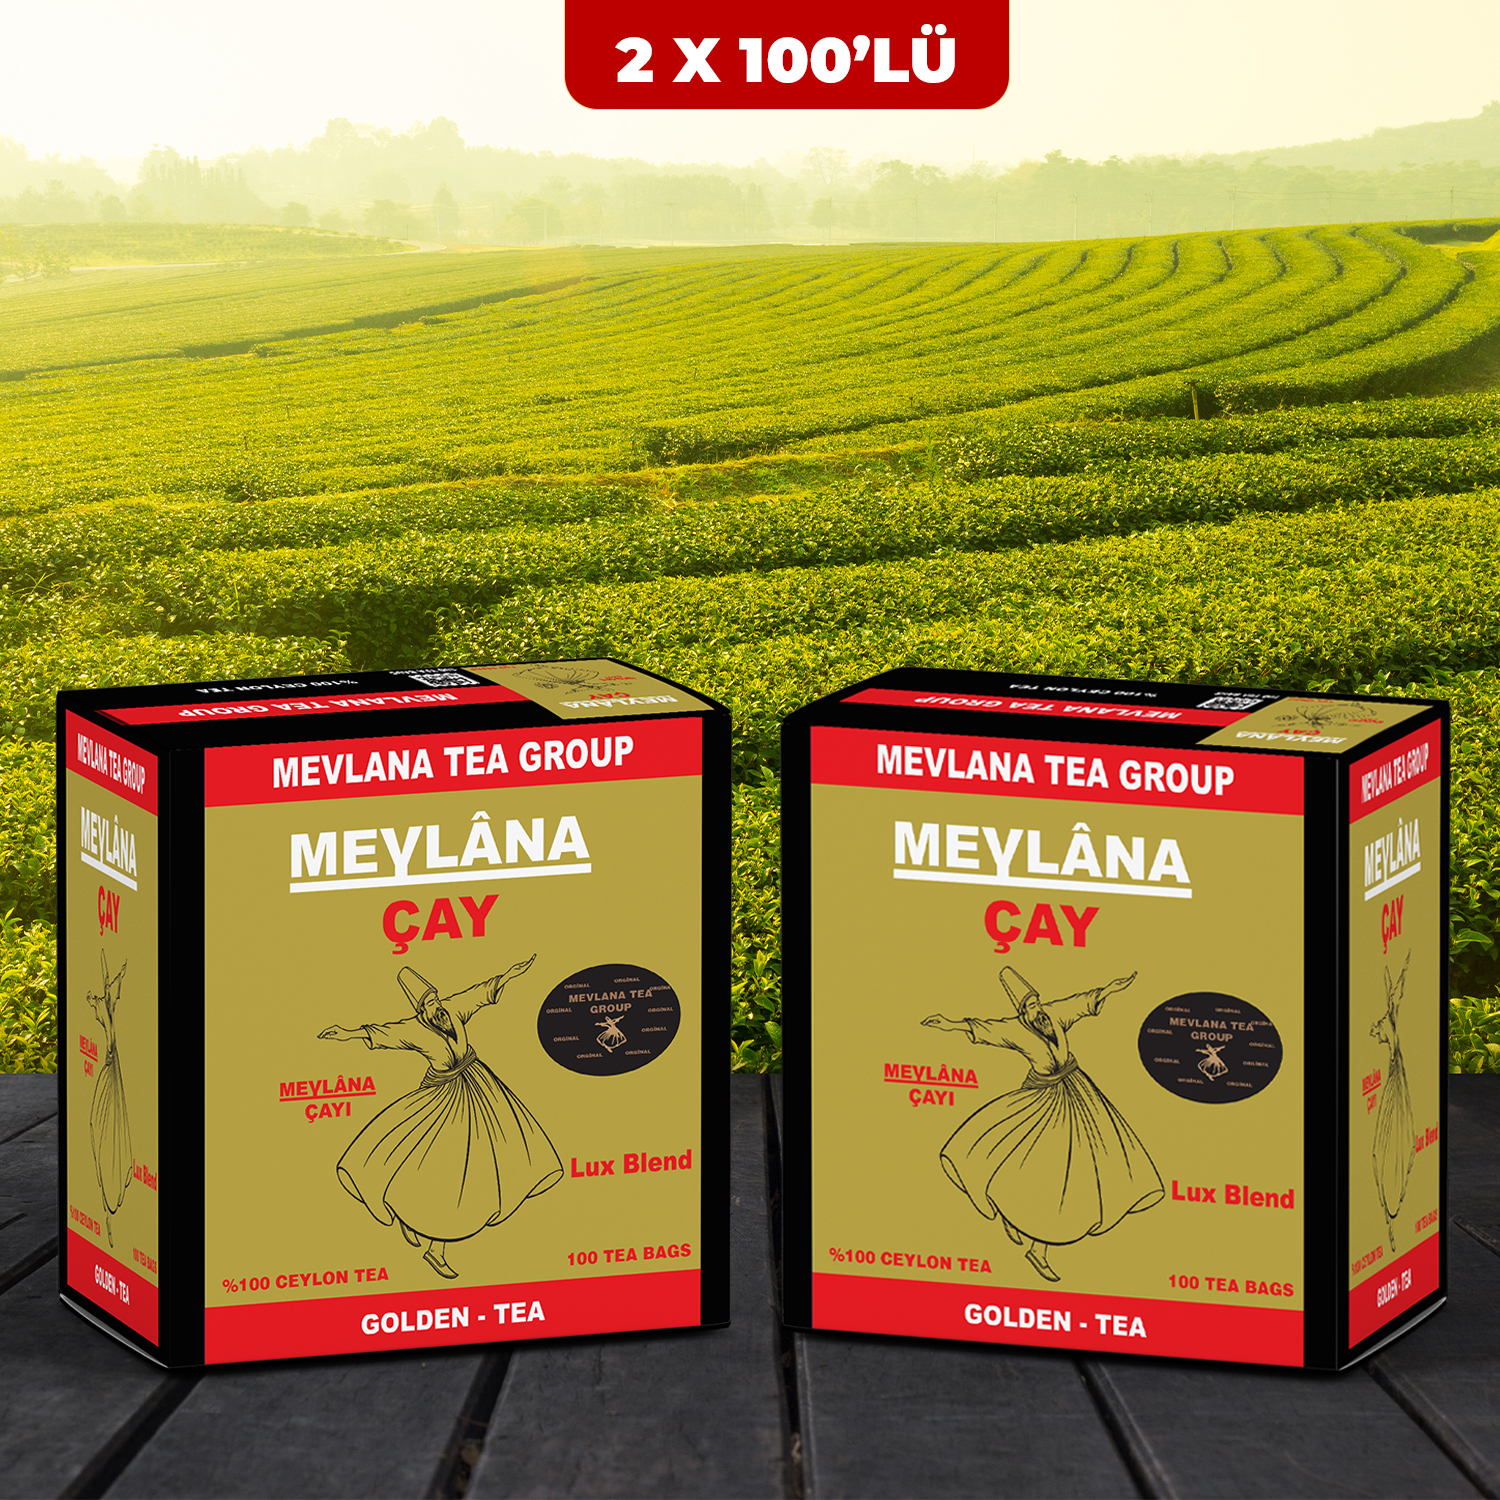 Mevlana Tea Group %100 Ceylon Sri Lanka Bardak Poşet Çay 2 x 100'lü